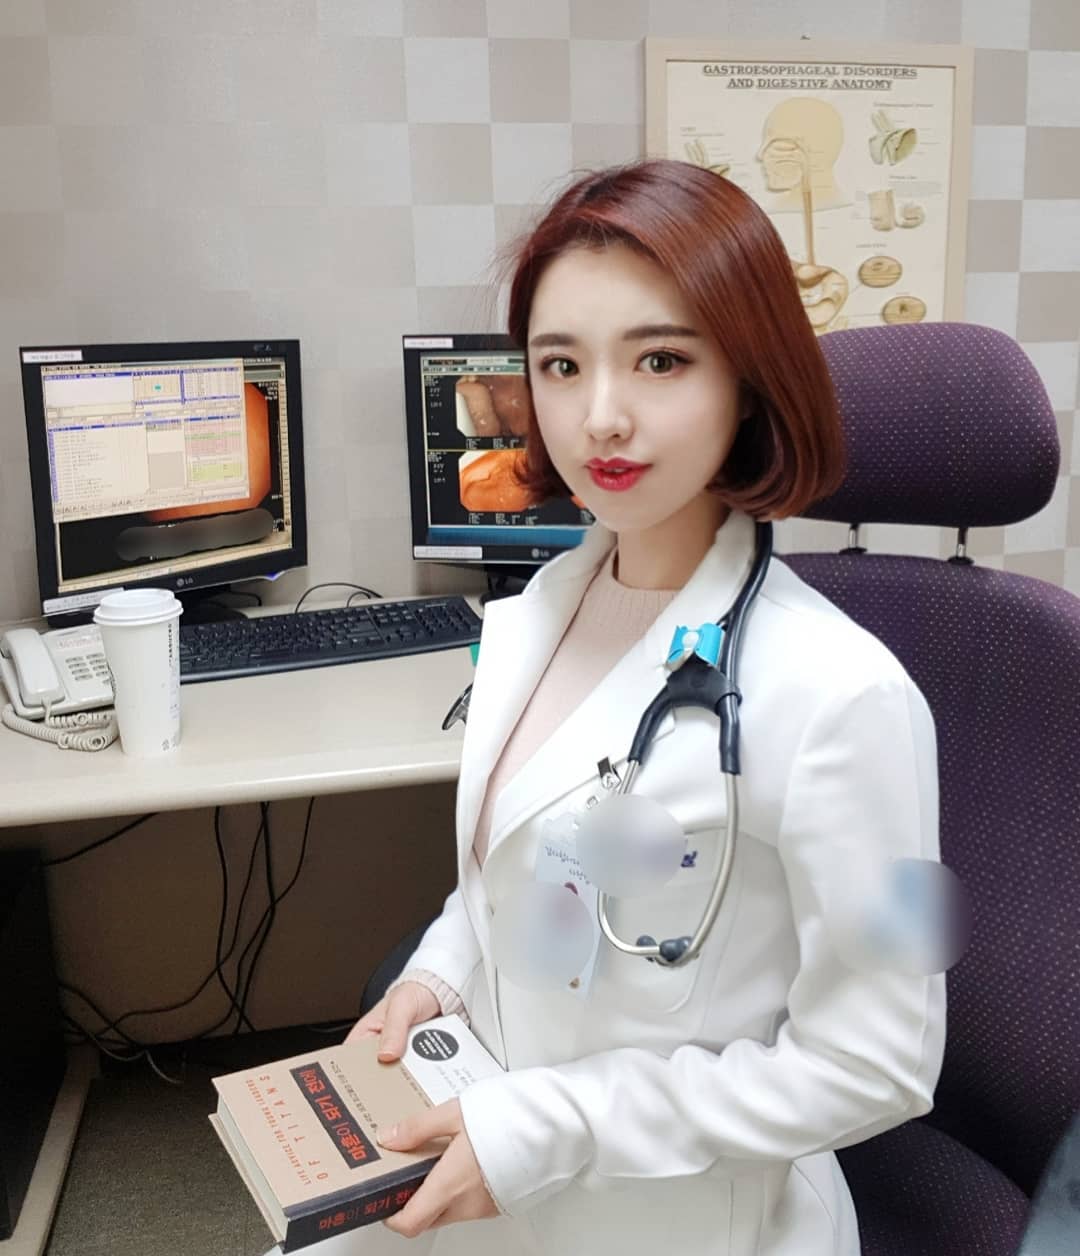 Nữ bác sĩ xứ Hàn xinh đẹp tập đa dạng môn để có dáng quyến rũ